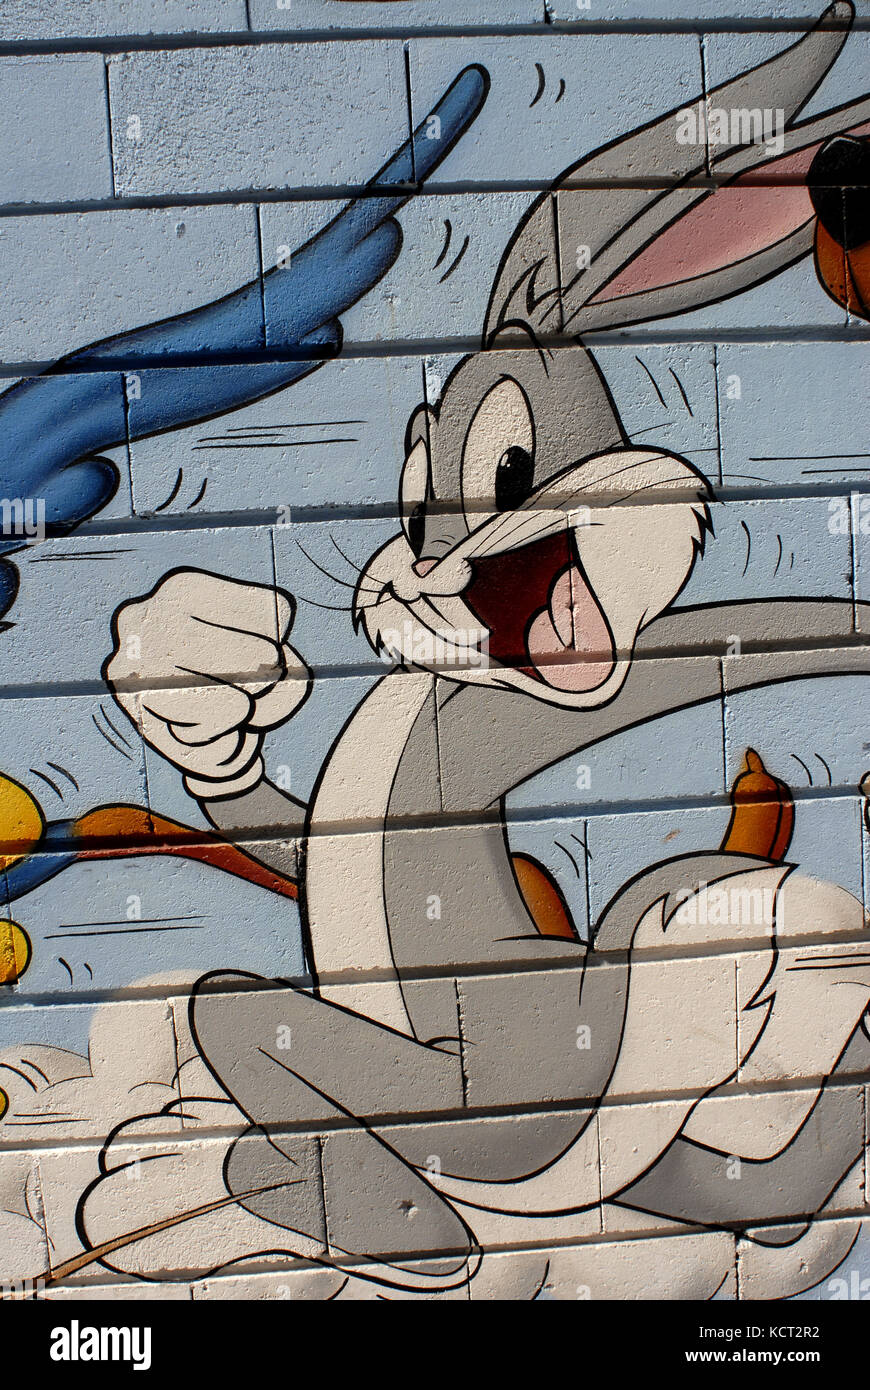 Speedy Gonzales und buggs Bunny CARTOONS Wandzeichnung Stockfoto